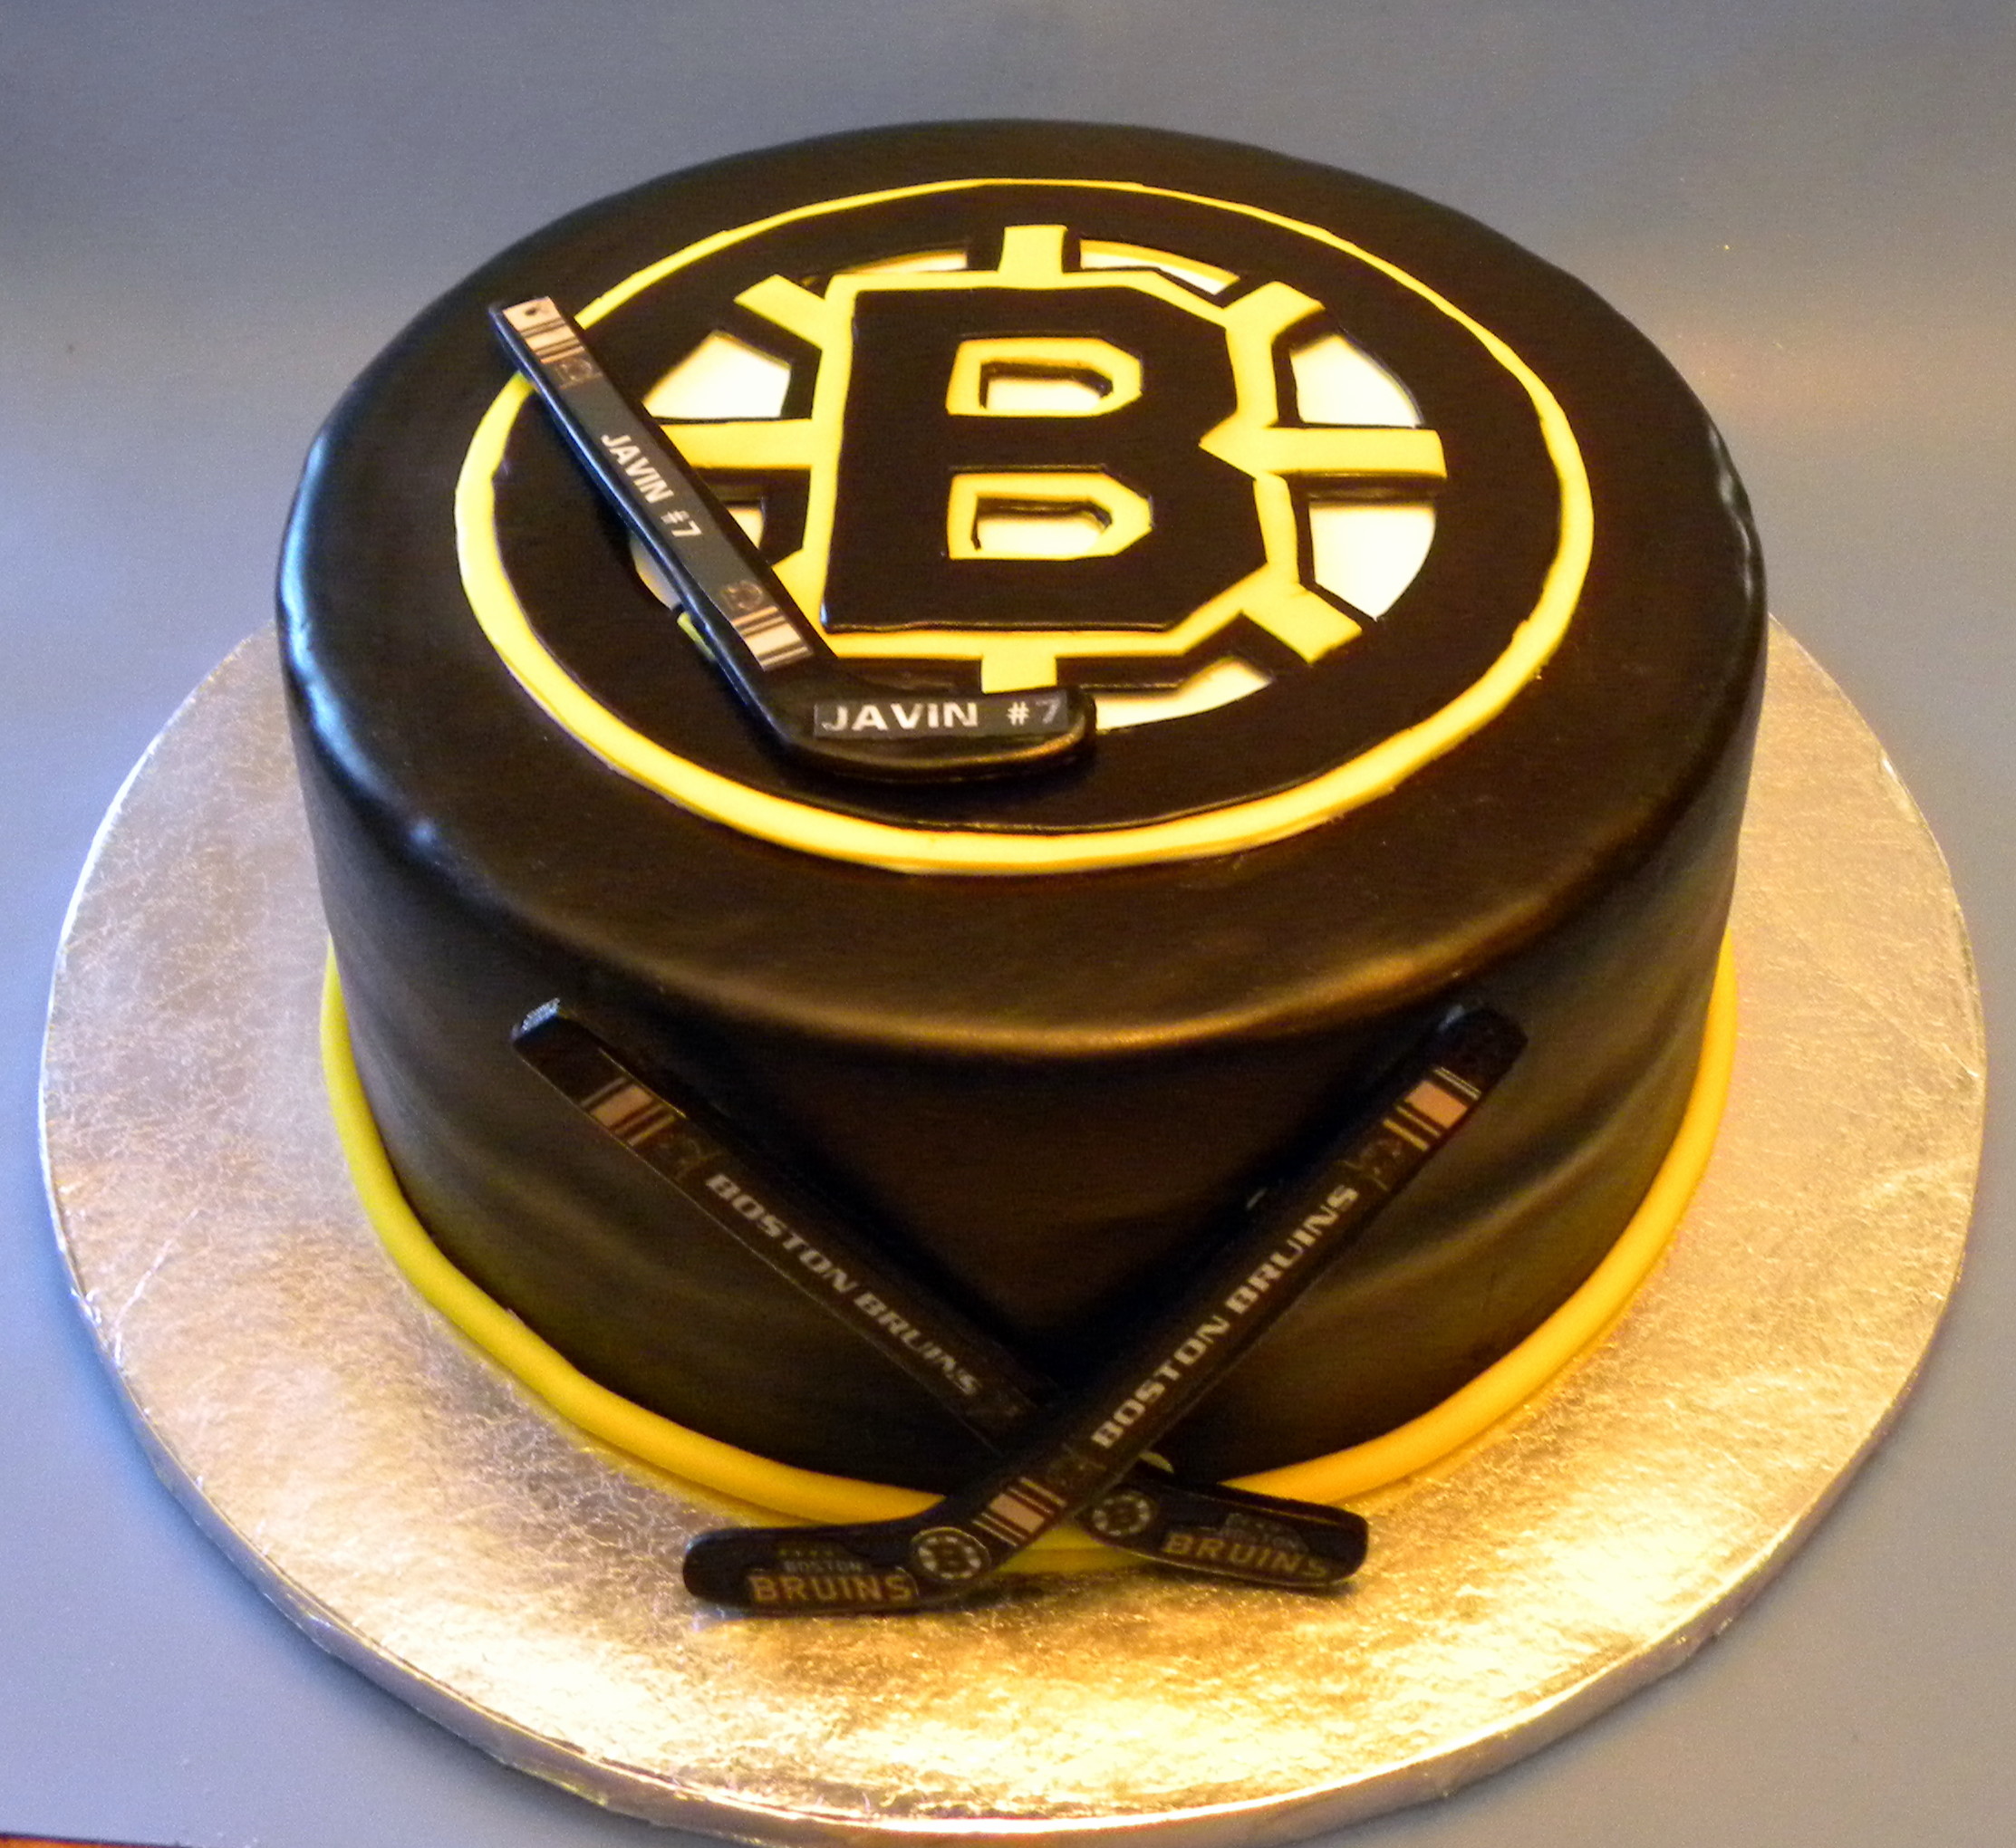 2225x2040 Boston Bruins Cake Decorating Community Cakes We Bake